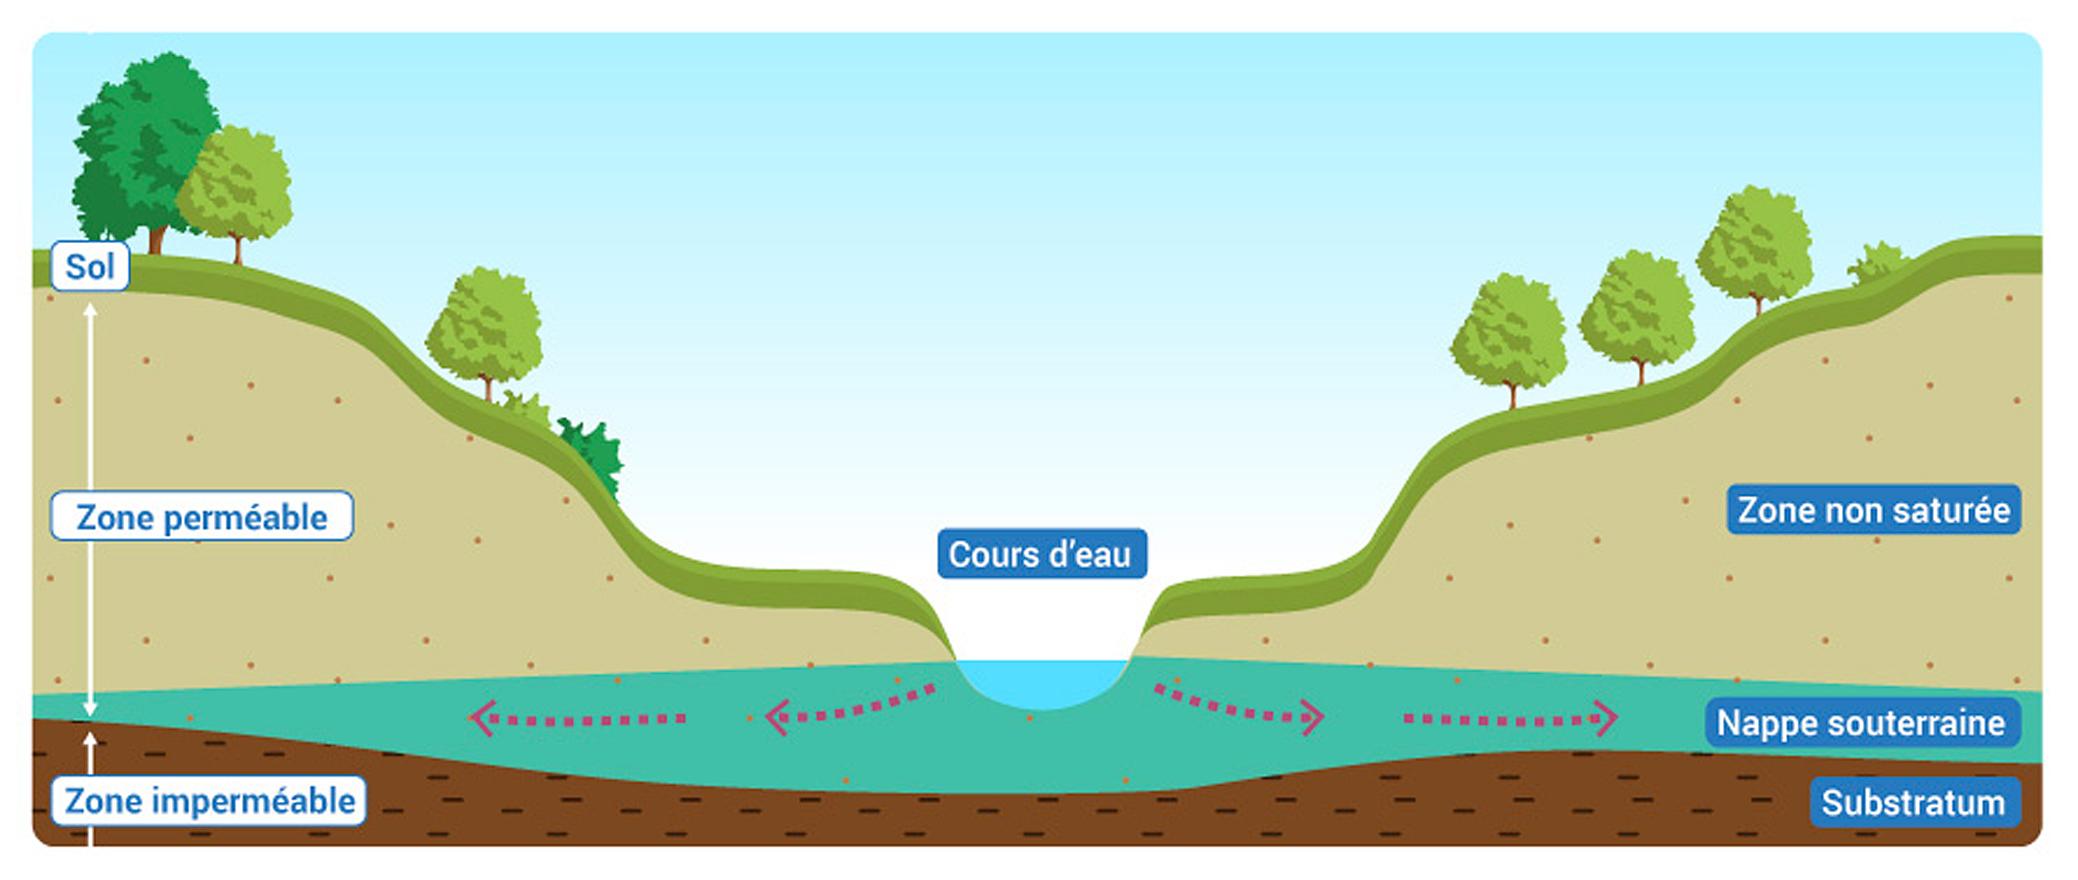  Des échanges entre les nappes souterraines et les cours d'eau